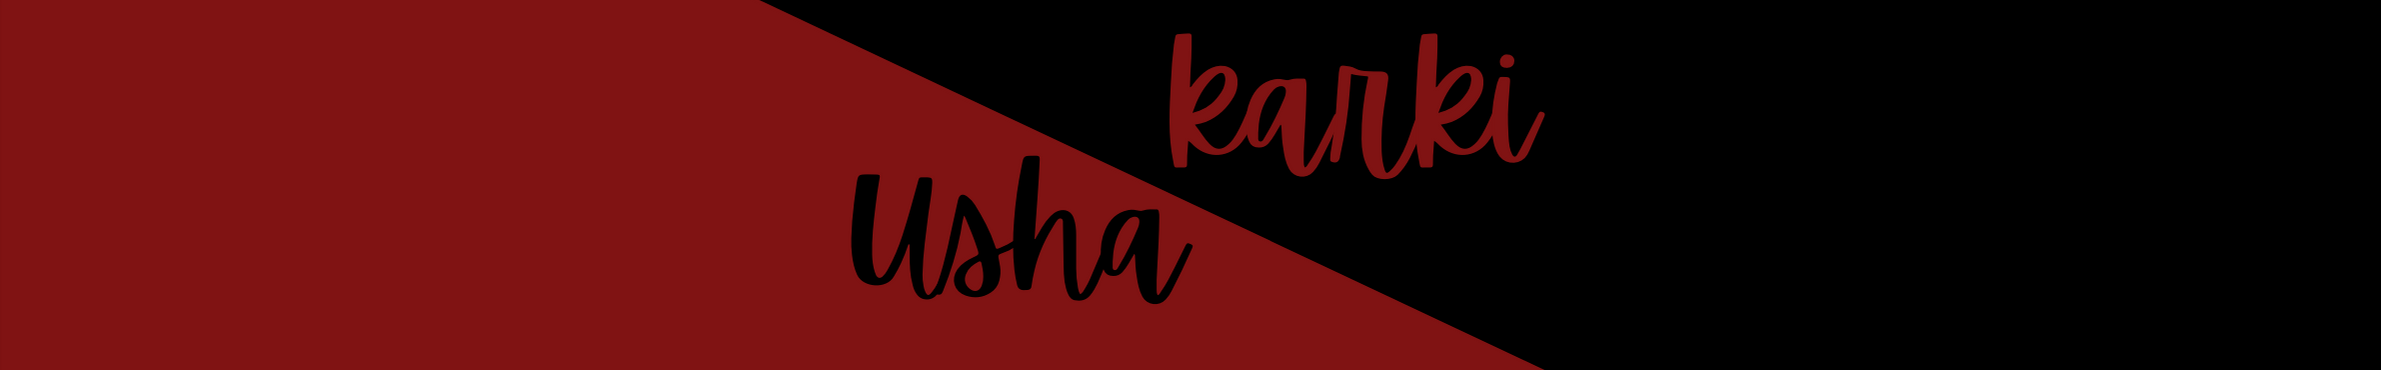 Usha Karki's profile banner